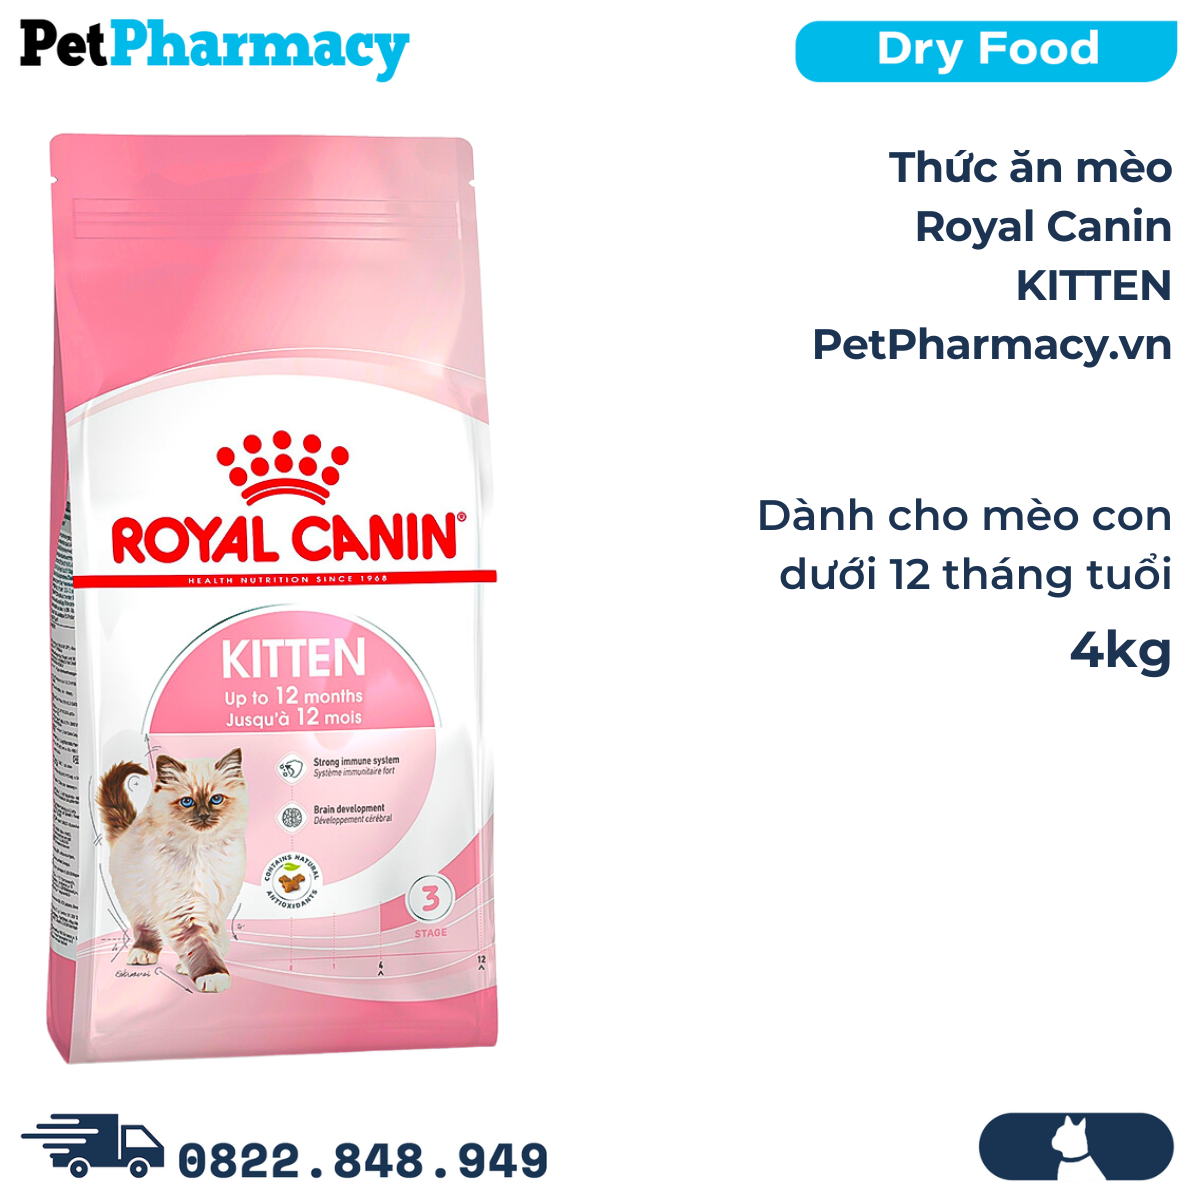  Thức ăn mèo Royal Canin KITTEN 4kg - Dành cho mèo con dưới 12 tháng tuổi 